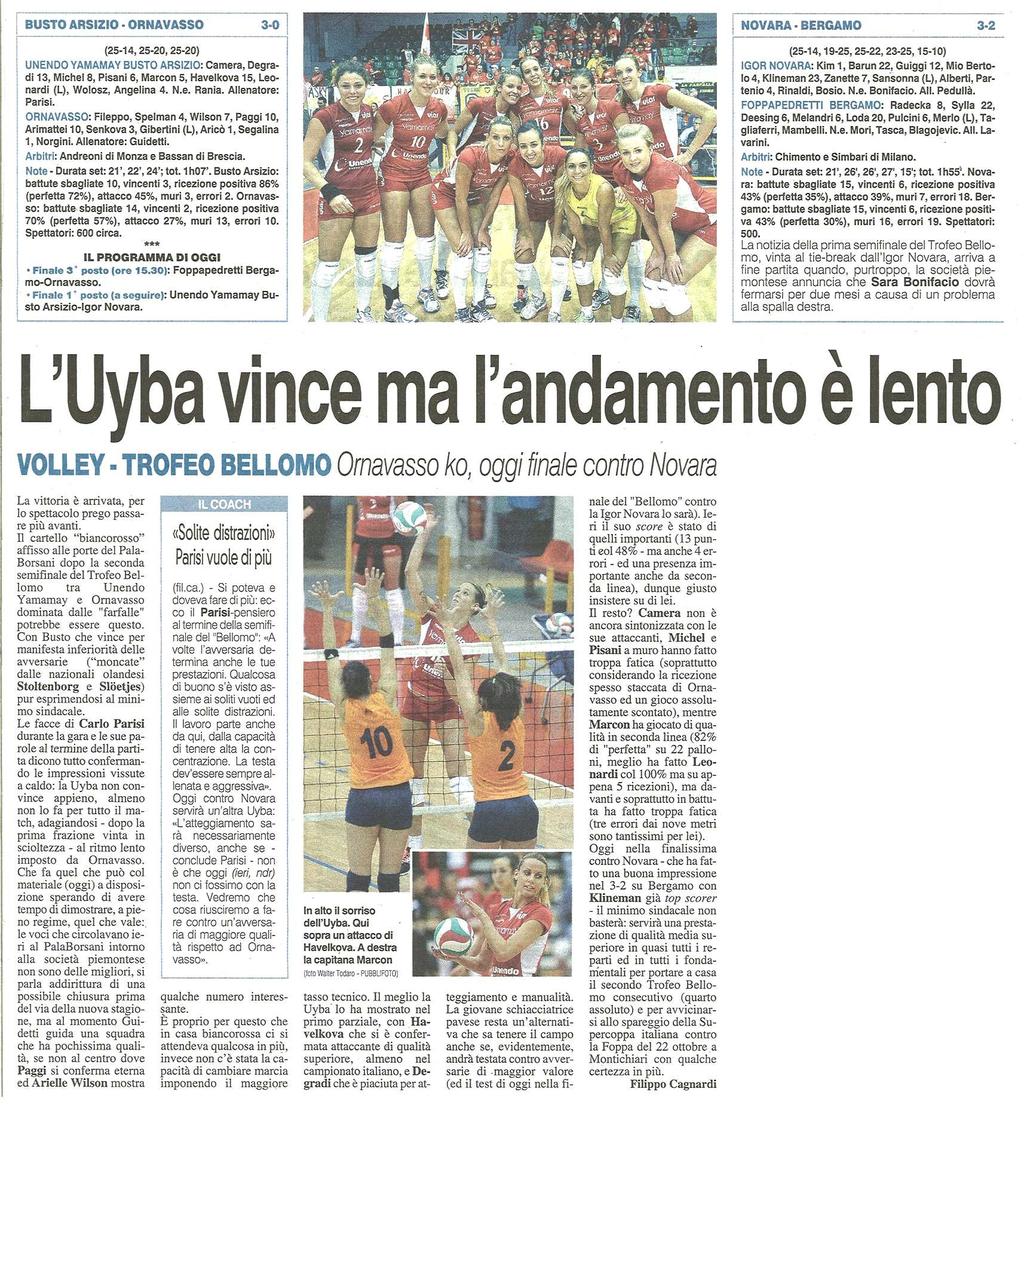 L'UYBA VINCE MA L'ANDAMENTO È LENTO Volley - Trofeo Bellomo - Ornavasso ko, oggi finale contro